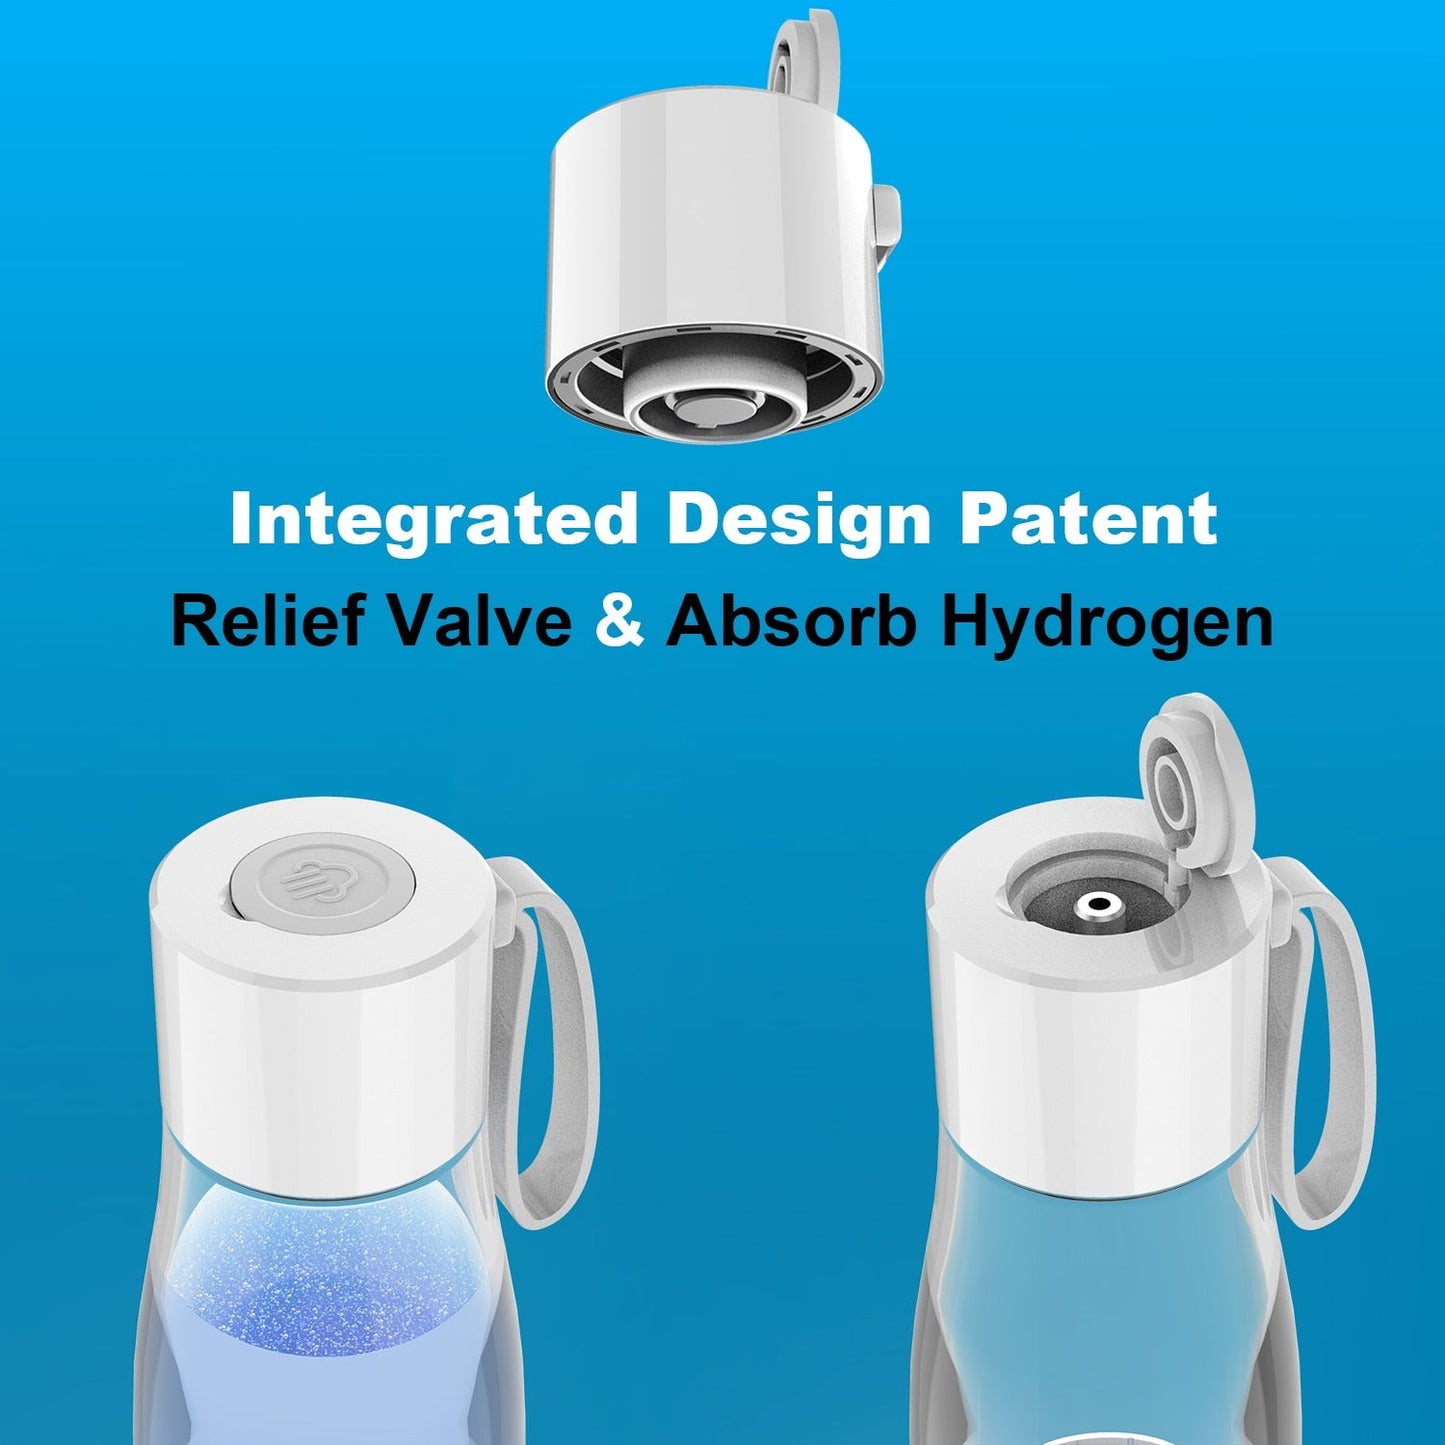 ALTHY-botella generadora de agua de Hidrógeno Molecular Premium DuPont SPE + PEM, fabricante de doble cámara + dispositivo de inhalación H2, 5000ppB máx.